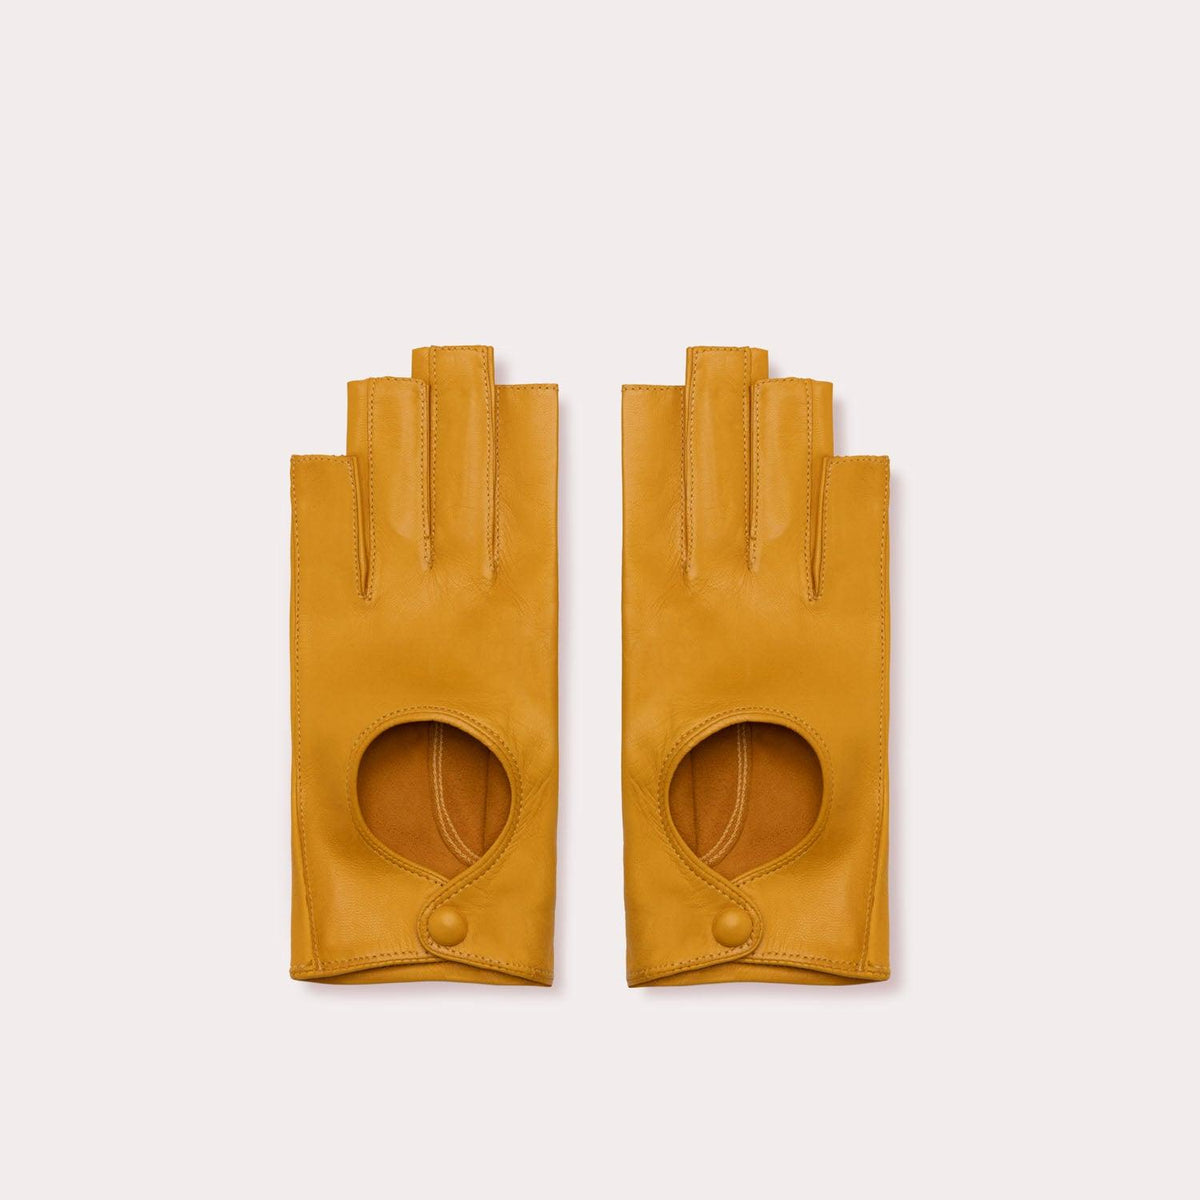 Yellow fingerless driver gloves, fingerless gloves by Seymoure Gloves. Yellow fingerless gloves.